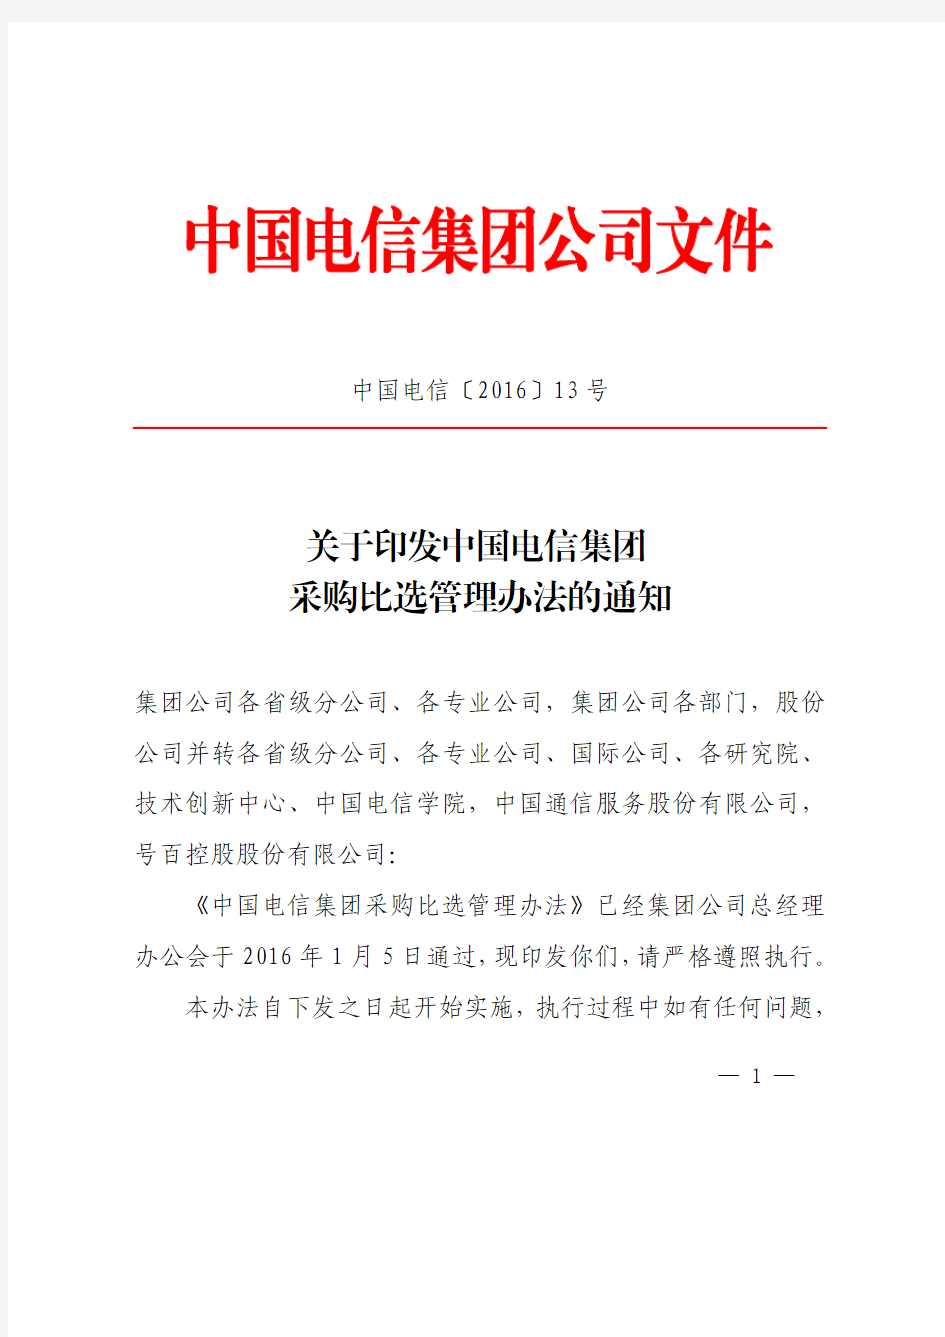 1《关于印发中国电信集团采购比选管理办法的通知》中国电信〔2016〕13号